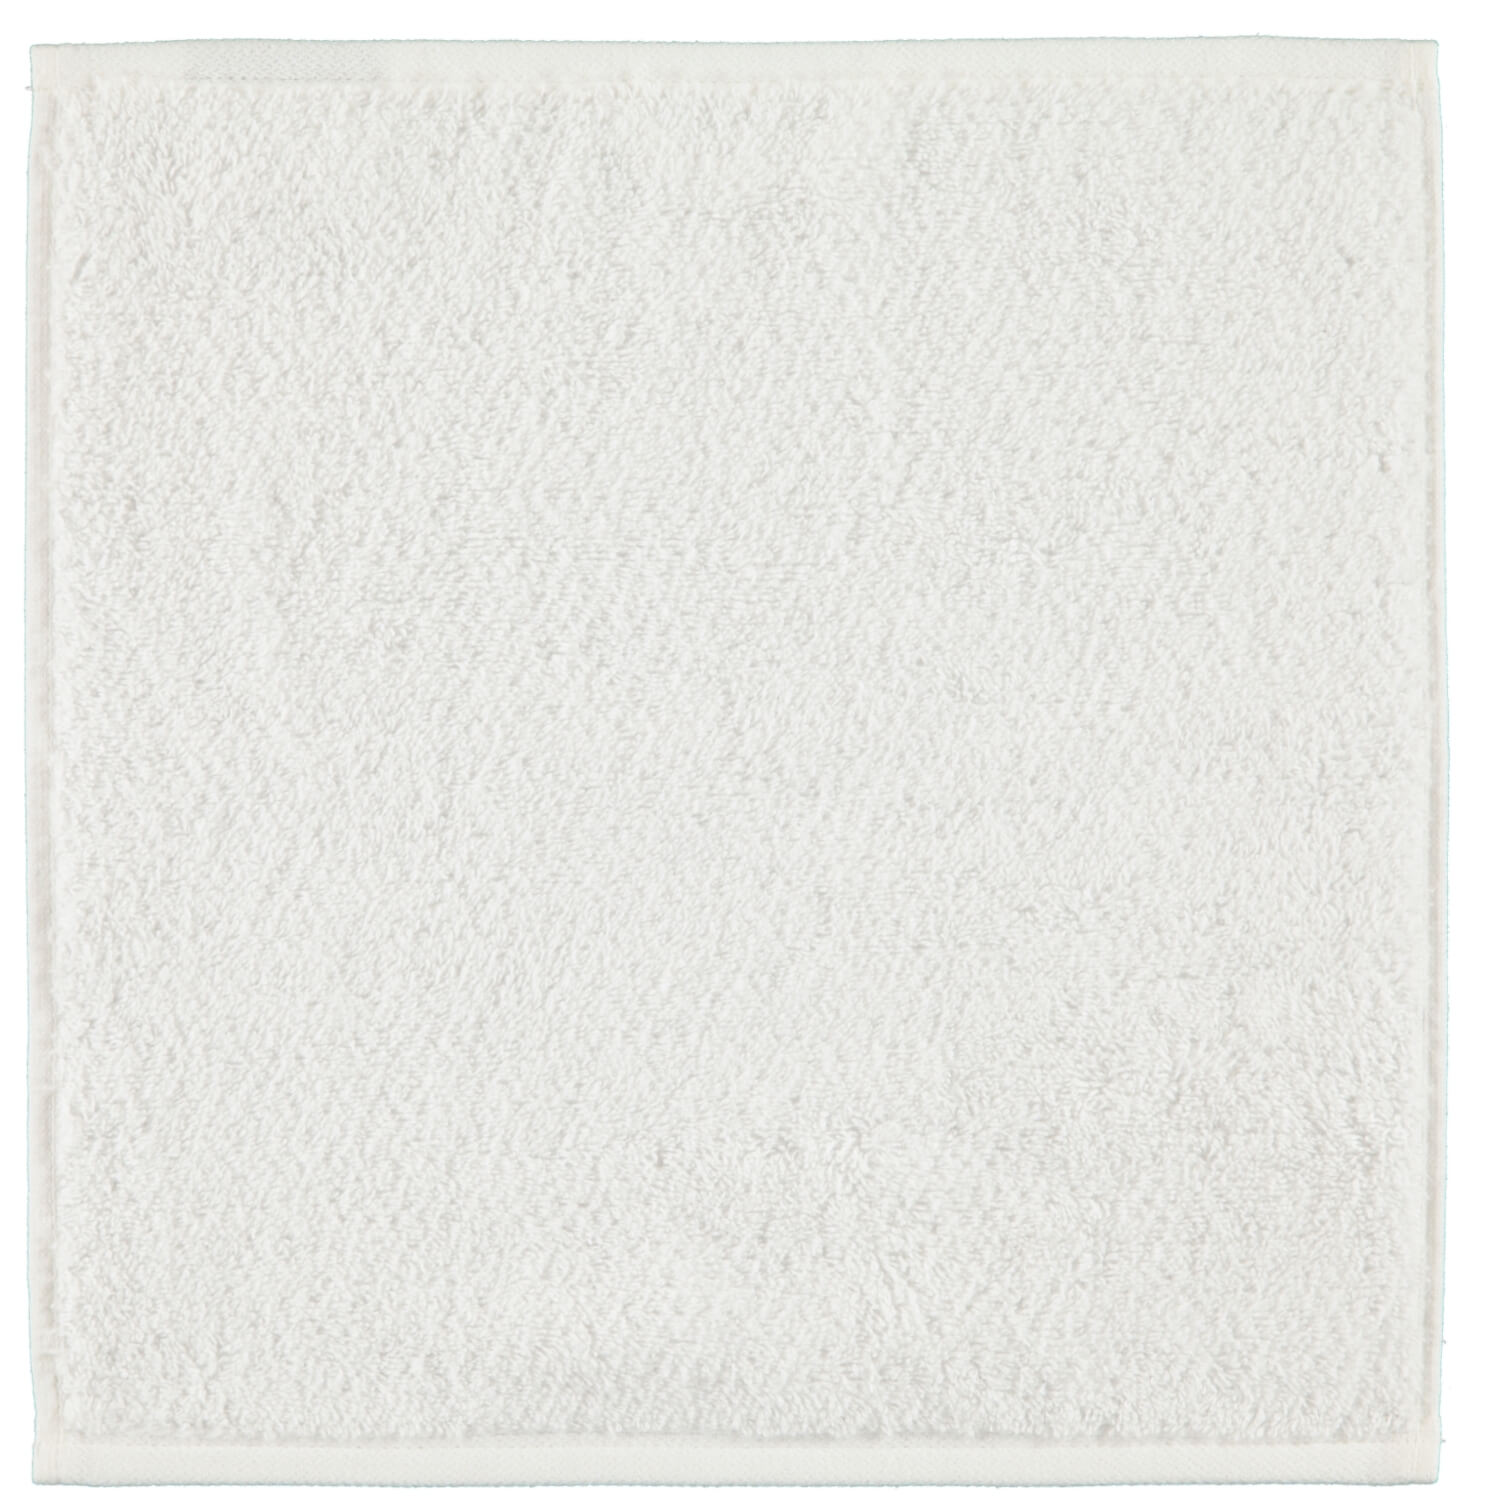 Однотонное полотенце Heritage White